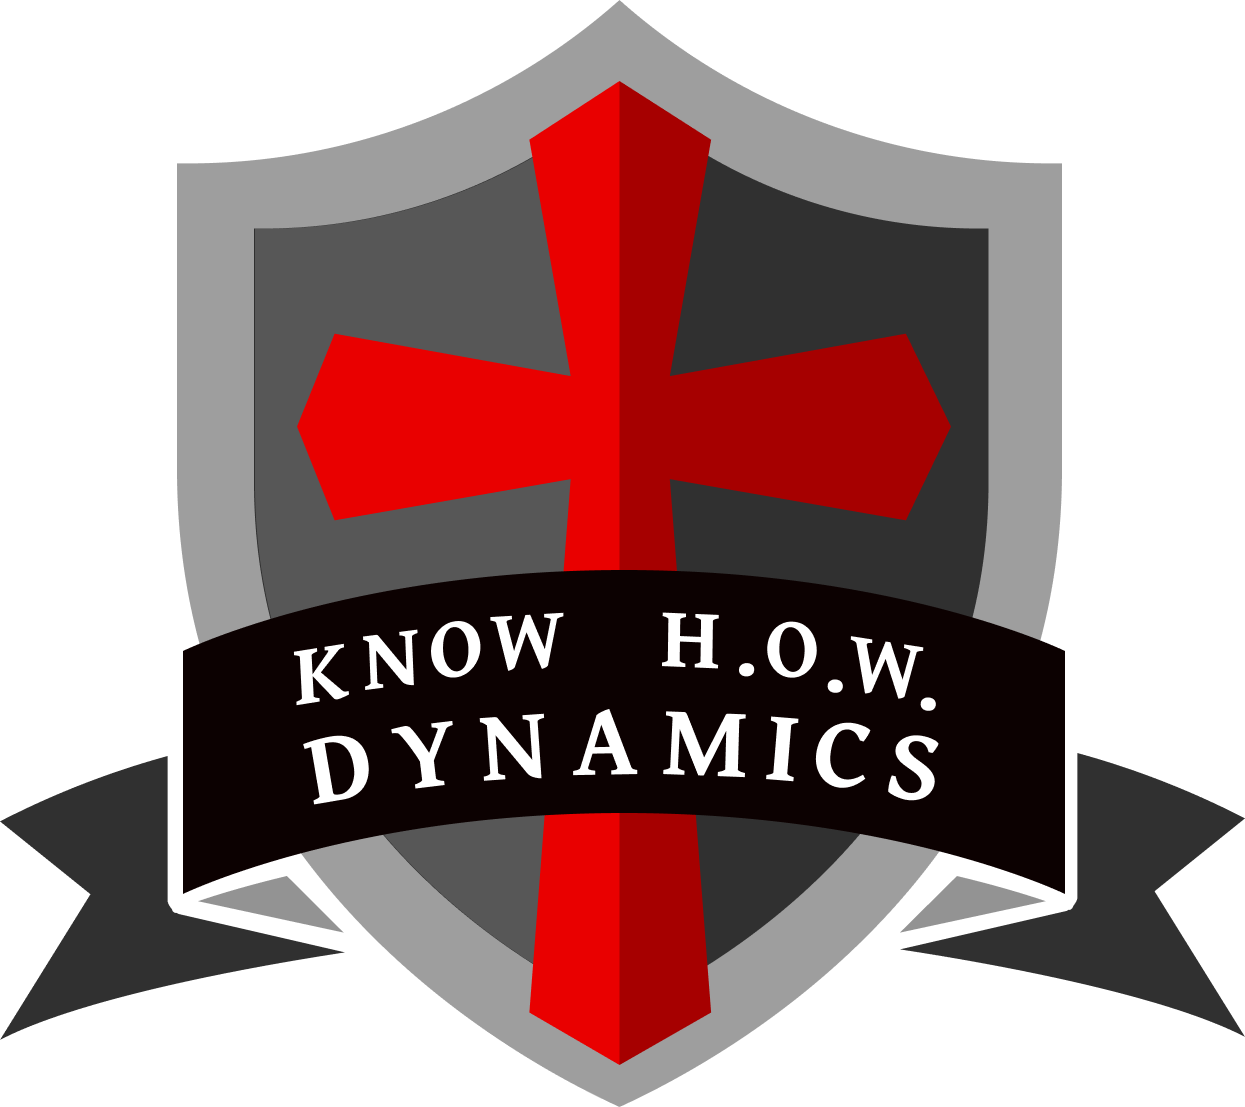 Know H.O.W. Dynamics